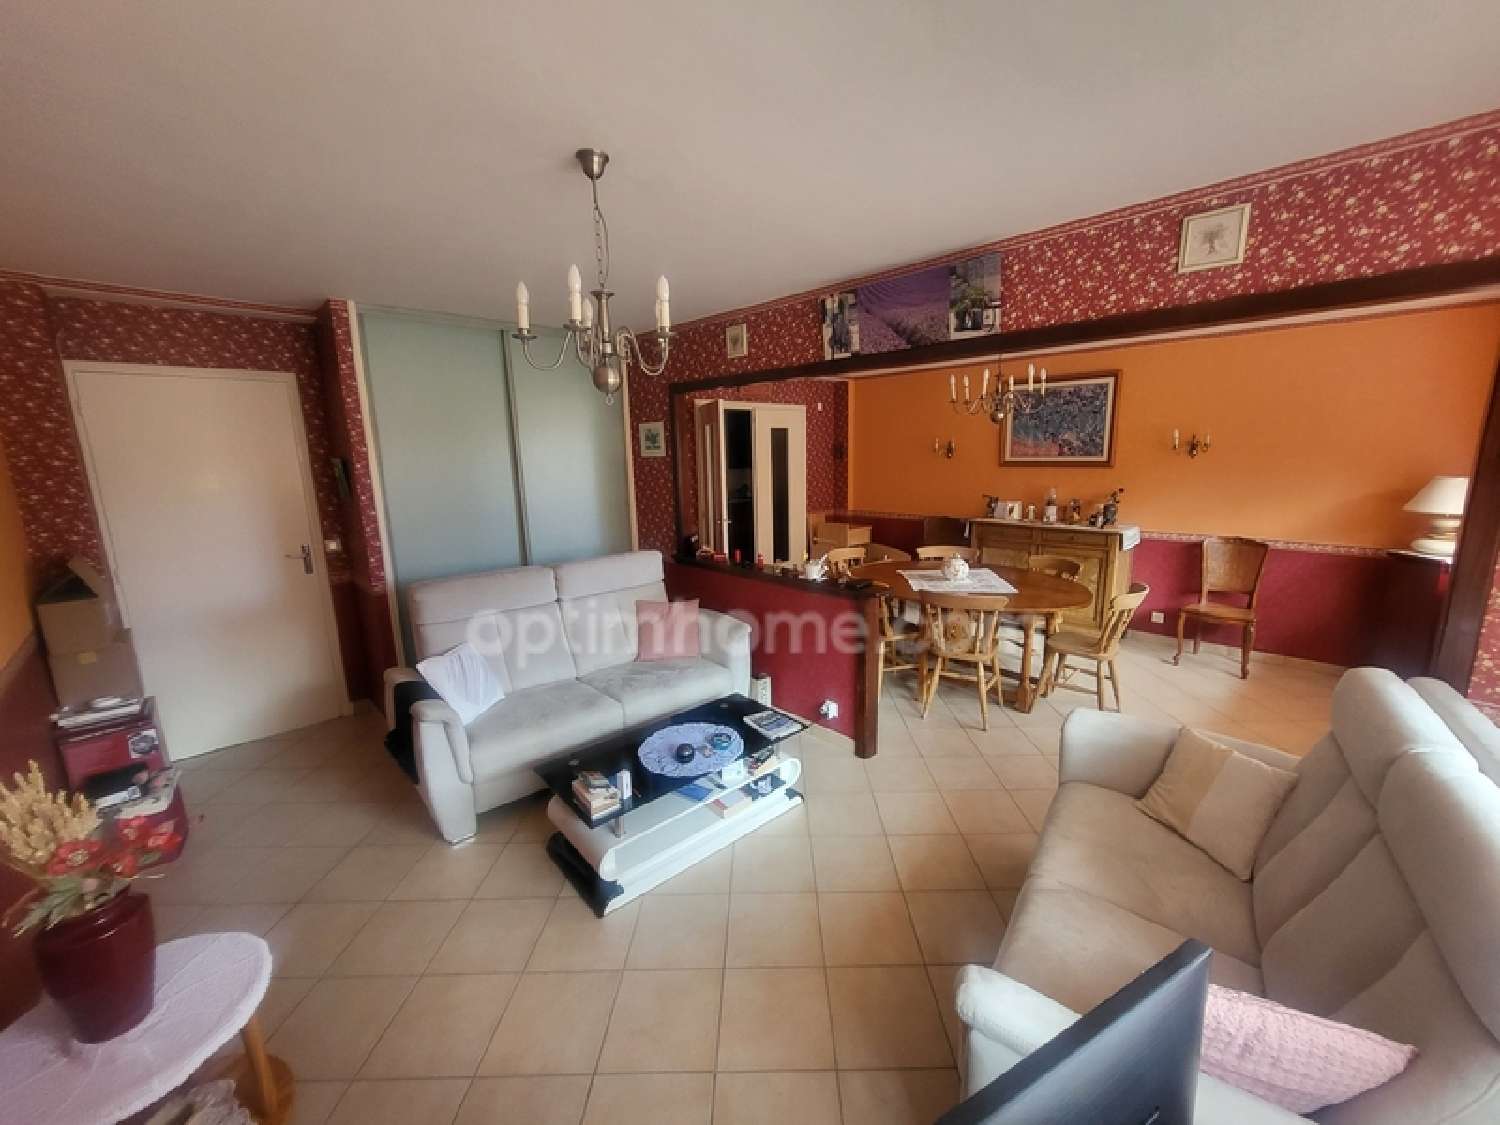  for sale apartment Istres Bouches-du-Rhône 3